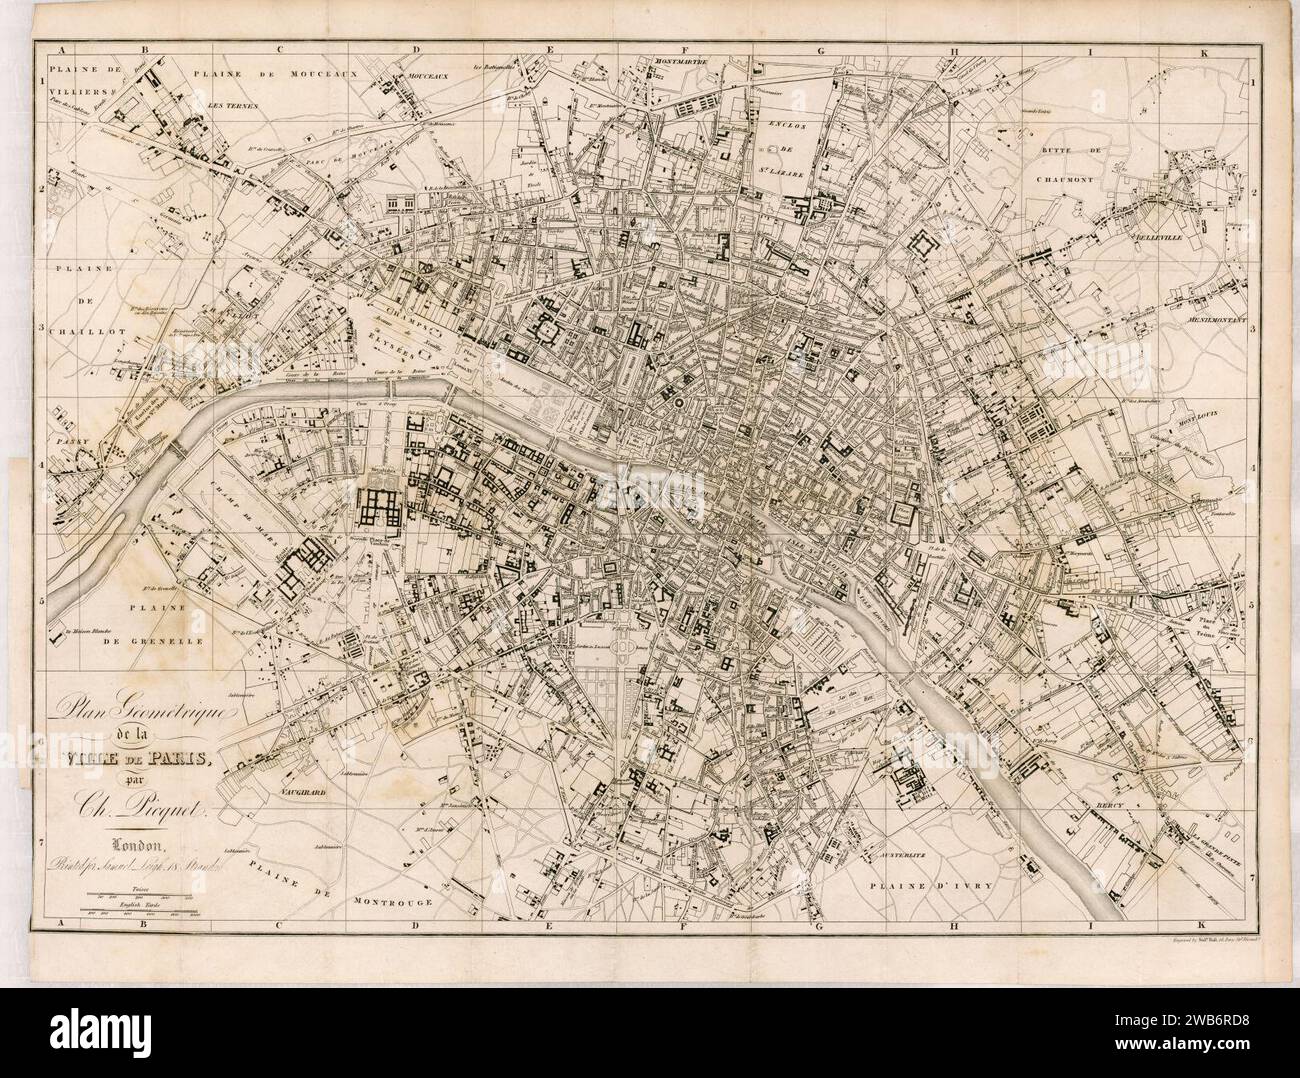 1820s map - Plan géométrique de la ville de Paris. Stock Photo